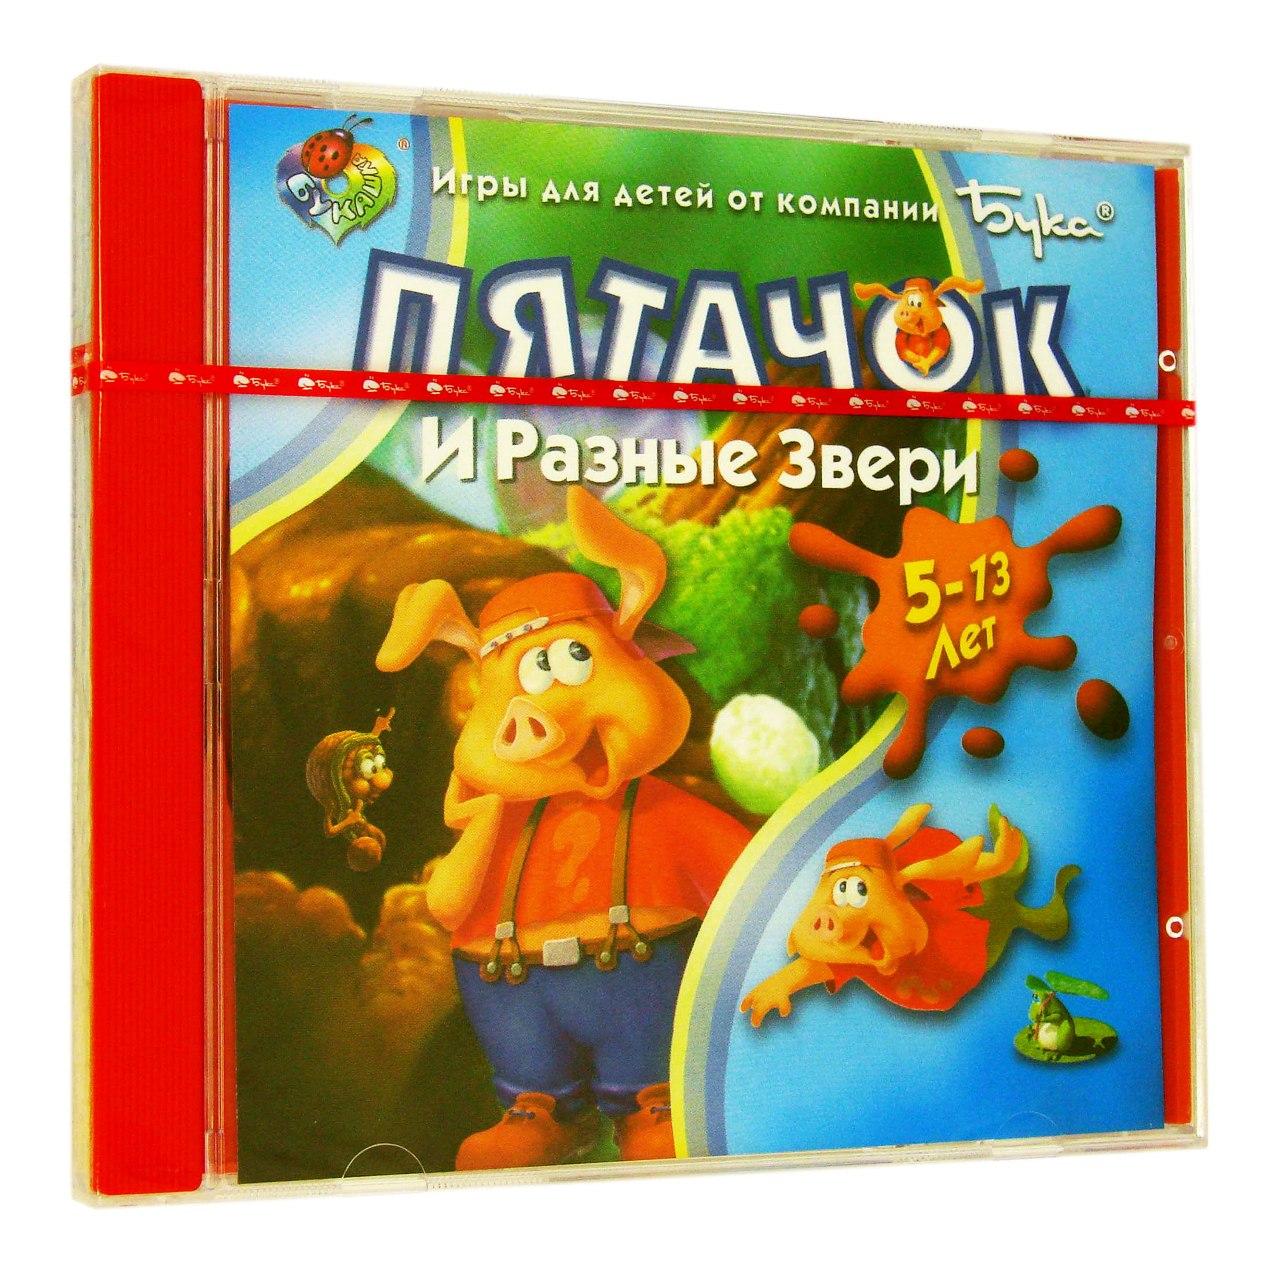 Компьютерный компакт-диск Пятачок и разные звери (ПК), фирма "Бука", 1CD